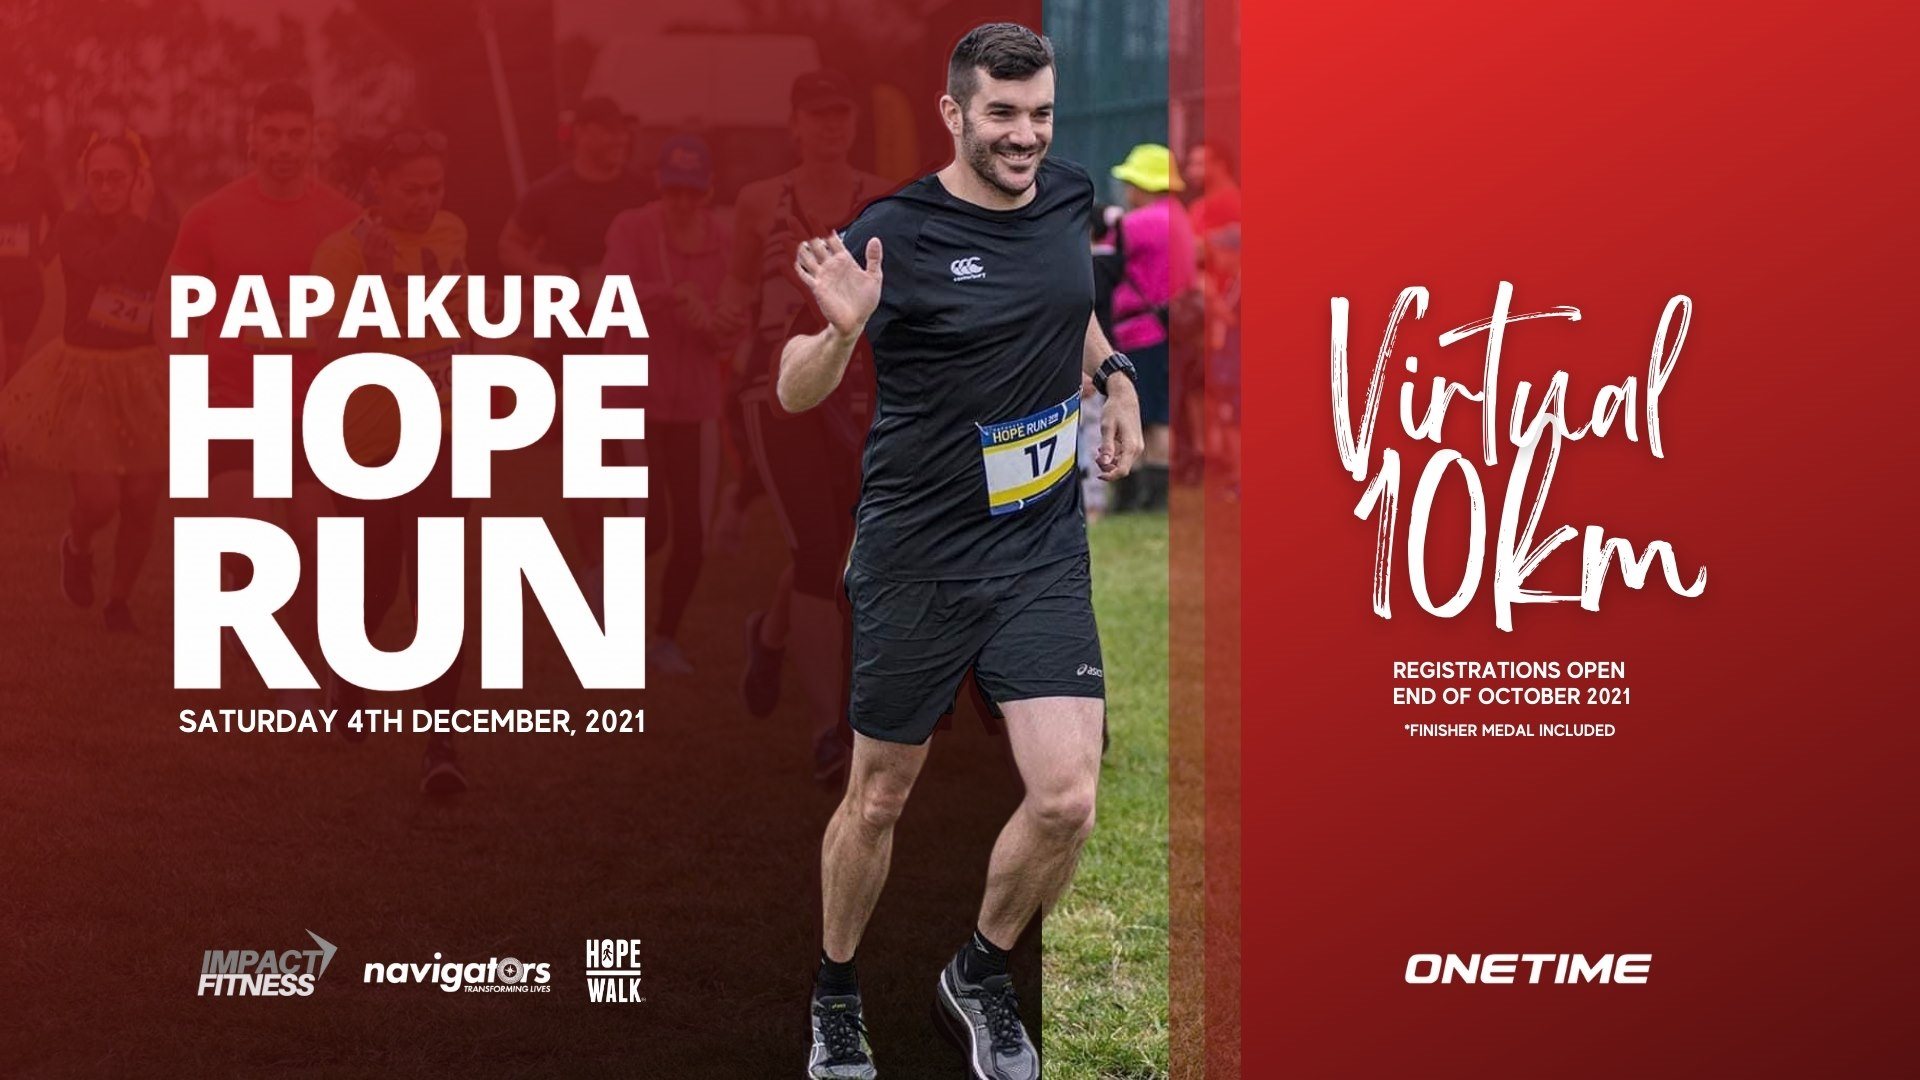 Papakura Hope Run Virtual 10km 2021